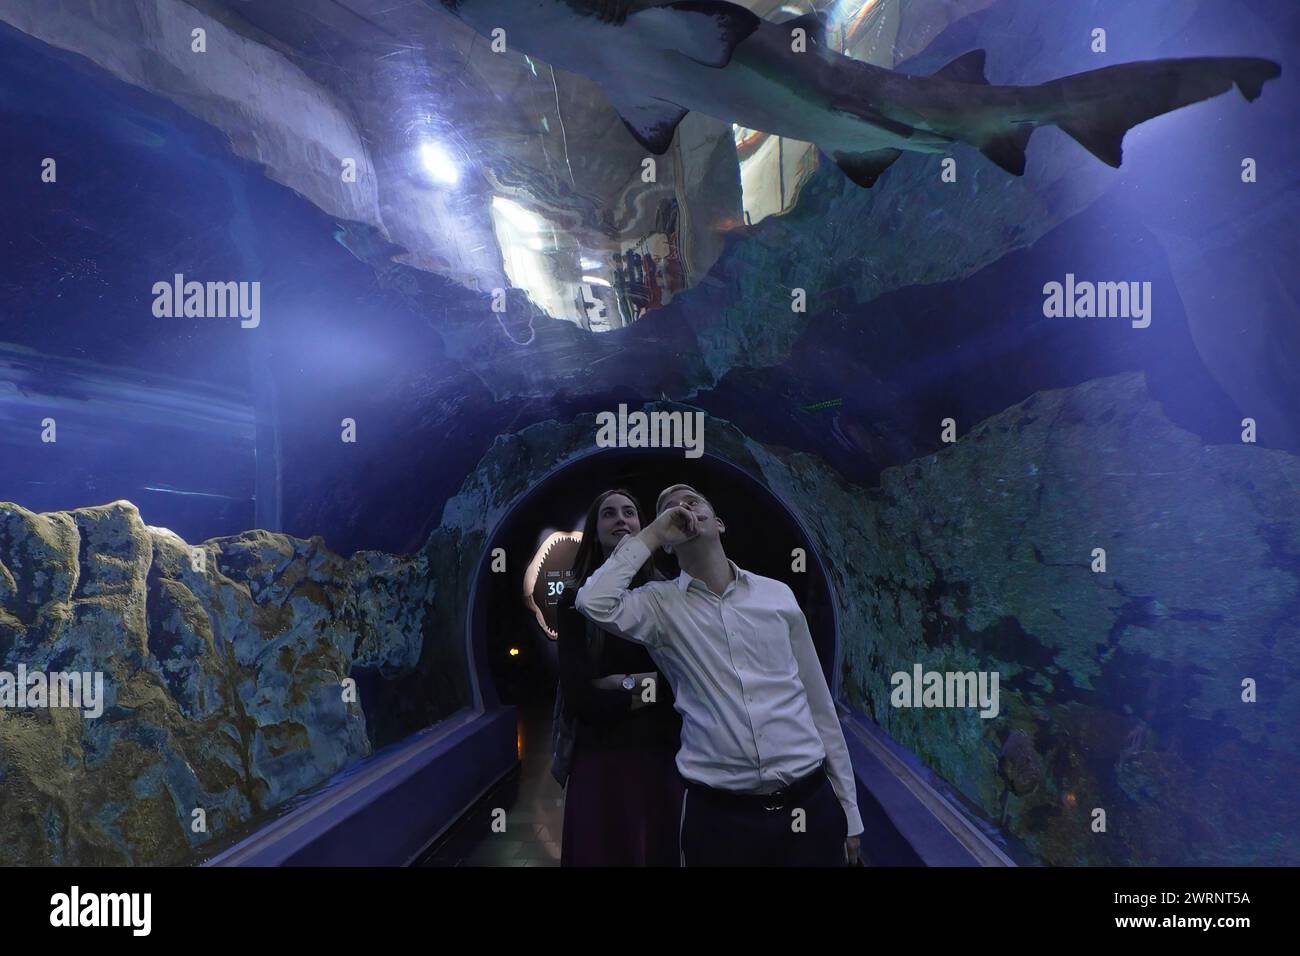 Un couple juif haredi traverse une passerelle couverte de verre en regardant un requin nager à l'aquarium Gottesman Family Israel, dédié à la conservation des habitats aquatiques d'Israël, à Jérusalem. Israël Banque D'Images